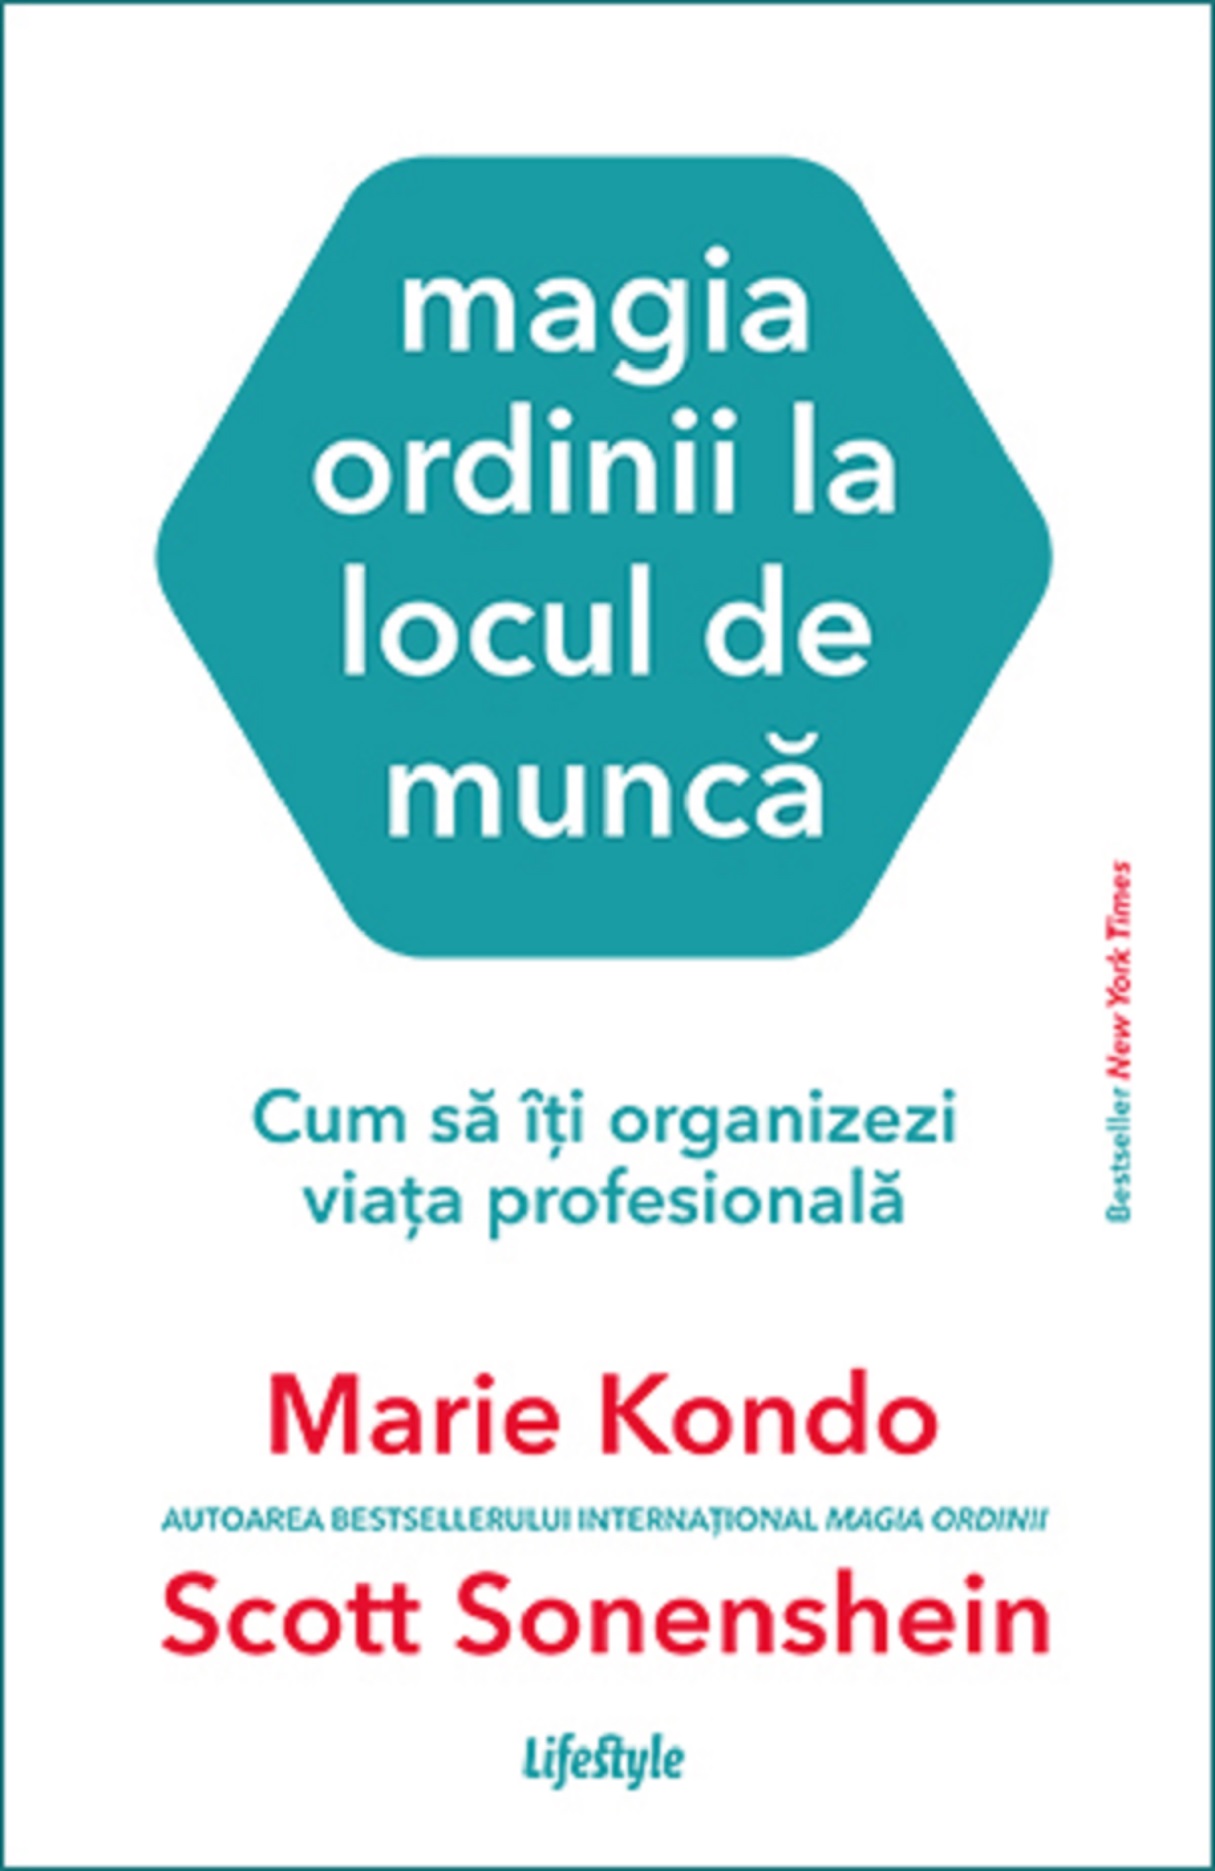 Magia ordinii la locul de munca | Marie Kondo carturesti.ro